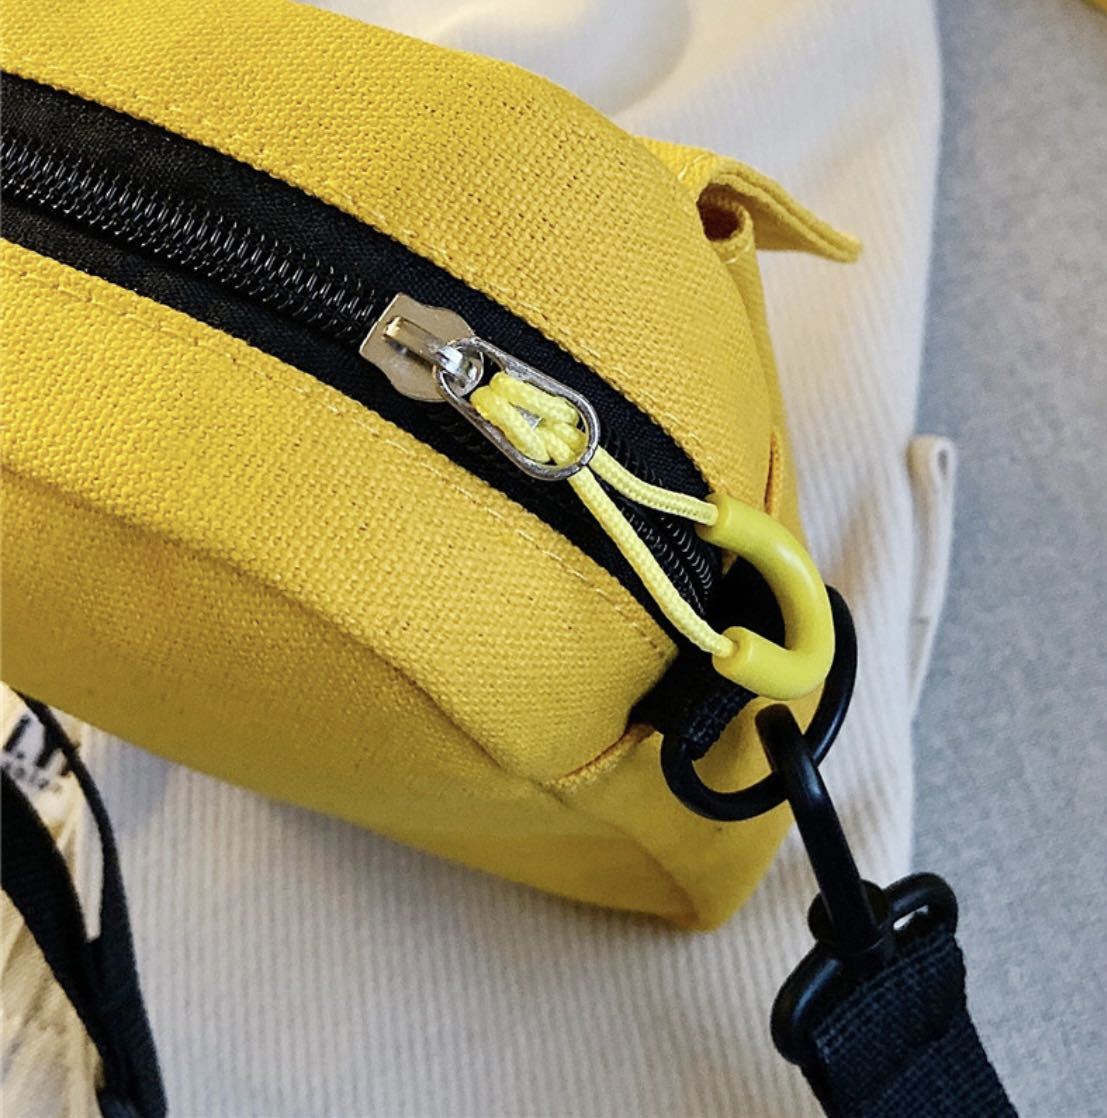 ミニポシェット 女性用バッグ新型学生清ちゃん初心者がショルダーバッグを持つ 通学ショルダーバッグ WIP_画像8